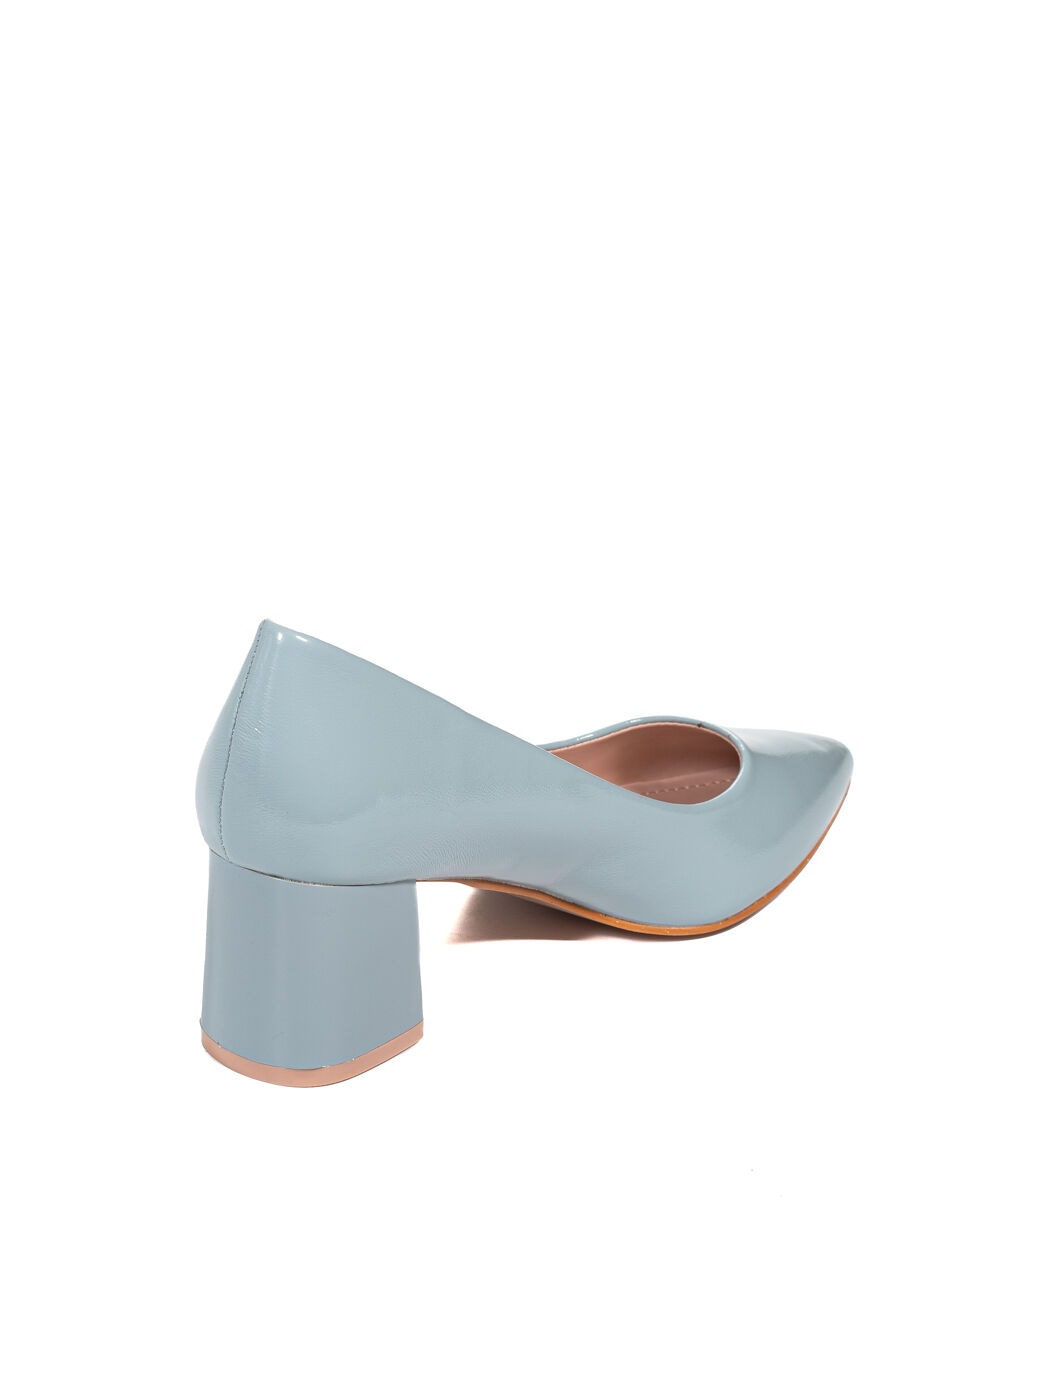 Туфли женские голубые искусственный лак каблук устойчивый демисезон от производителя 6M вид 1